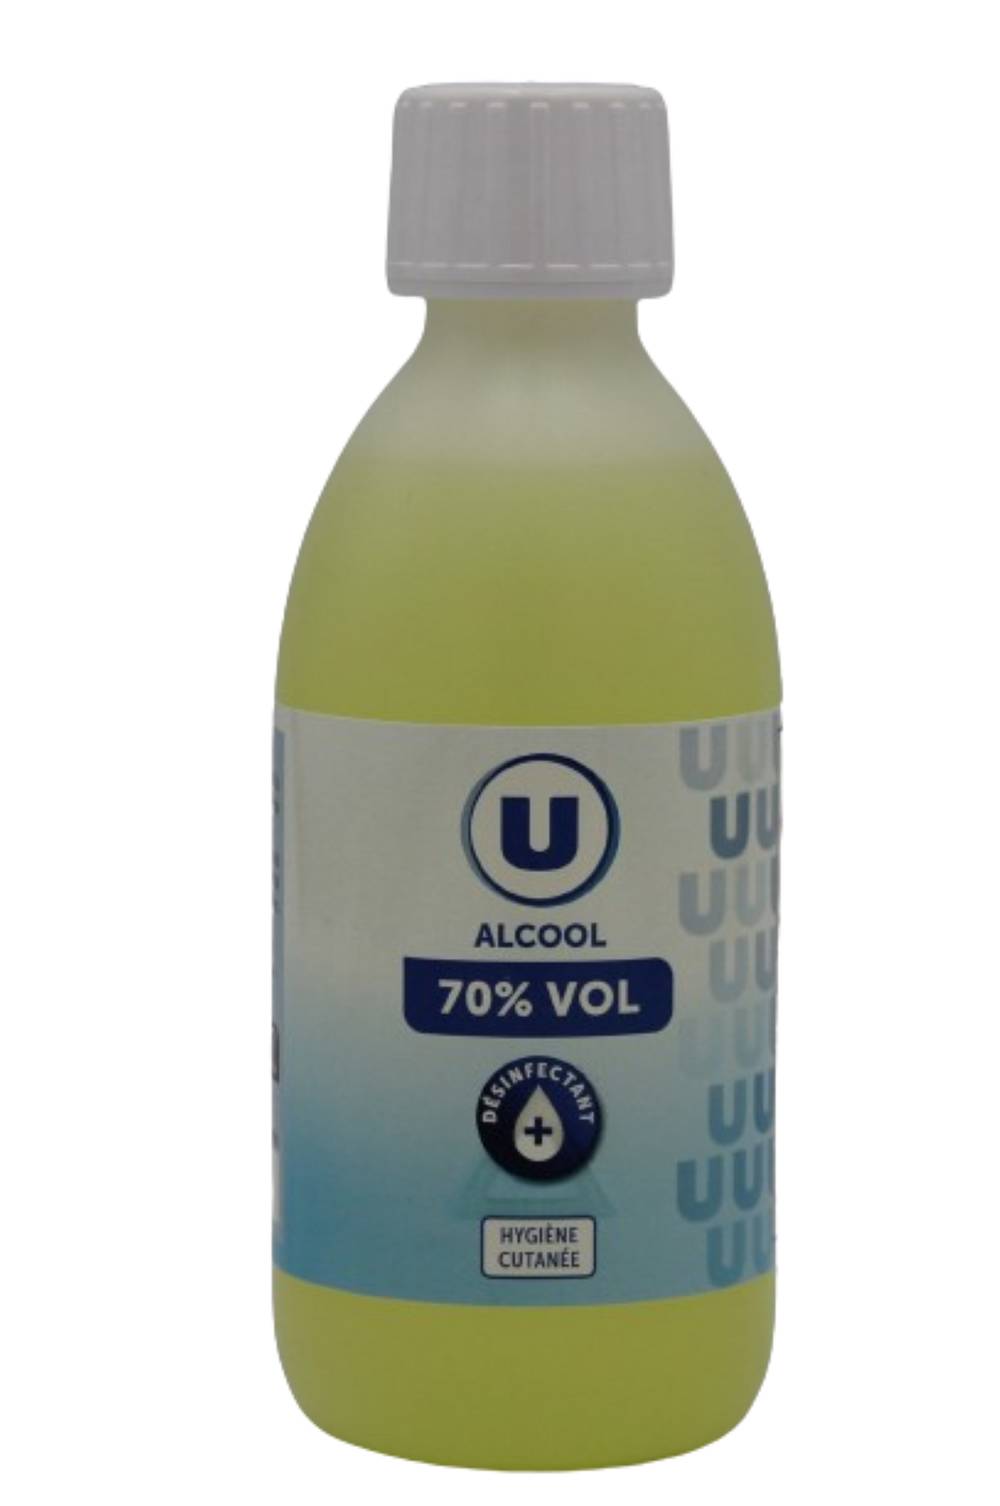 Les Produits U - Alcool modifié (250ml)